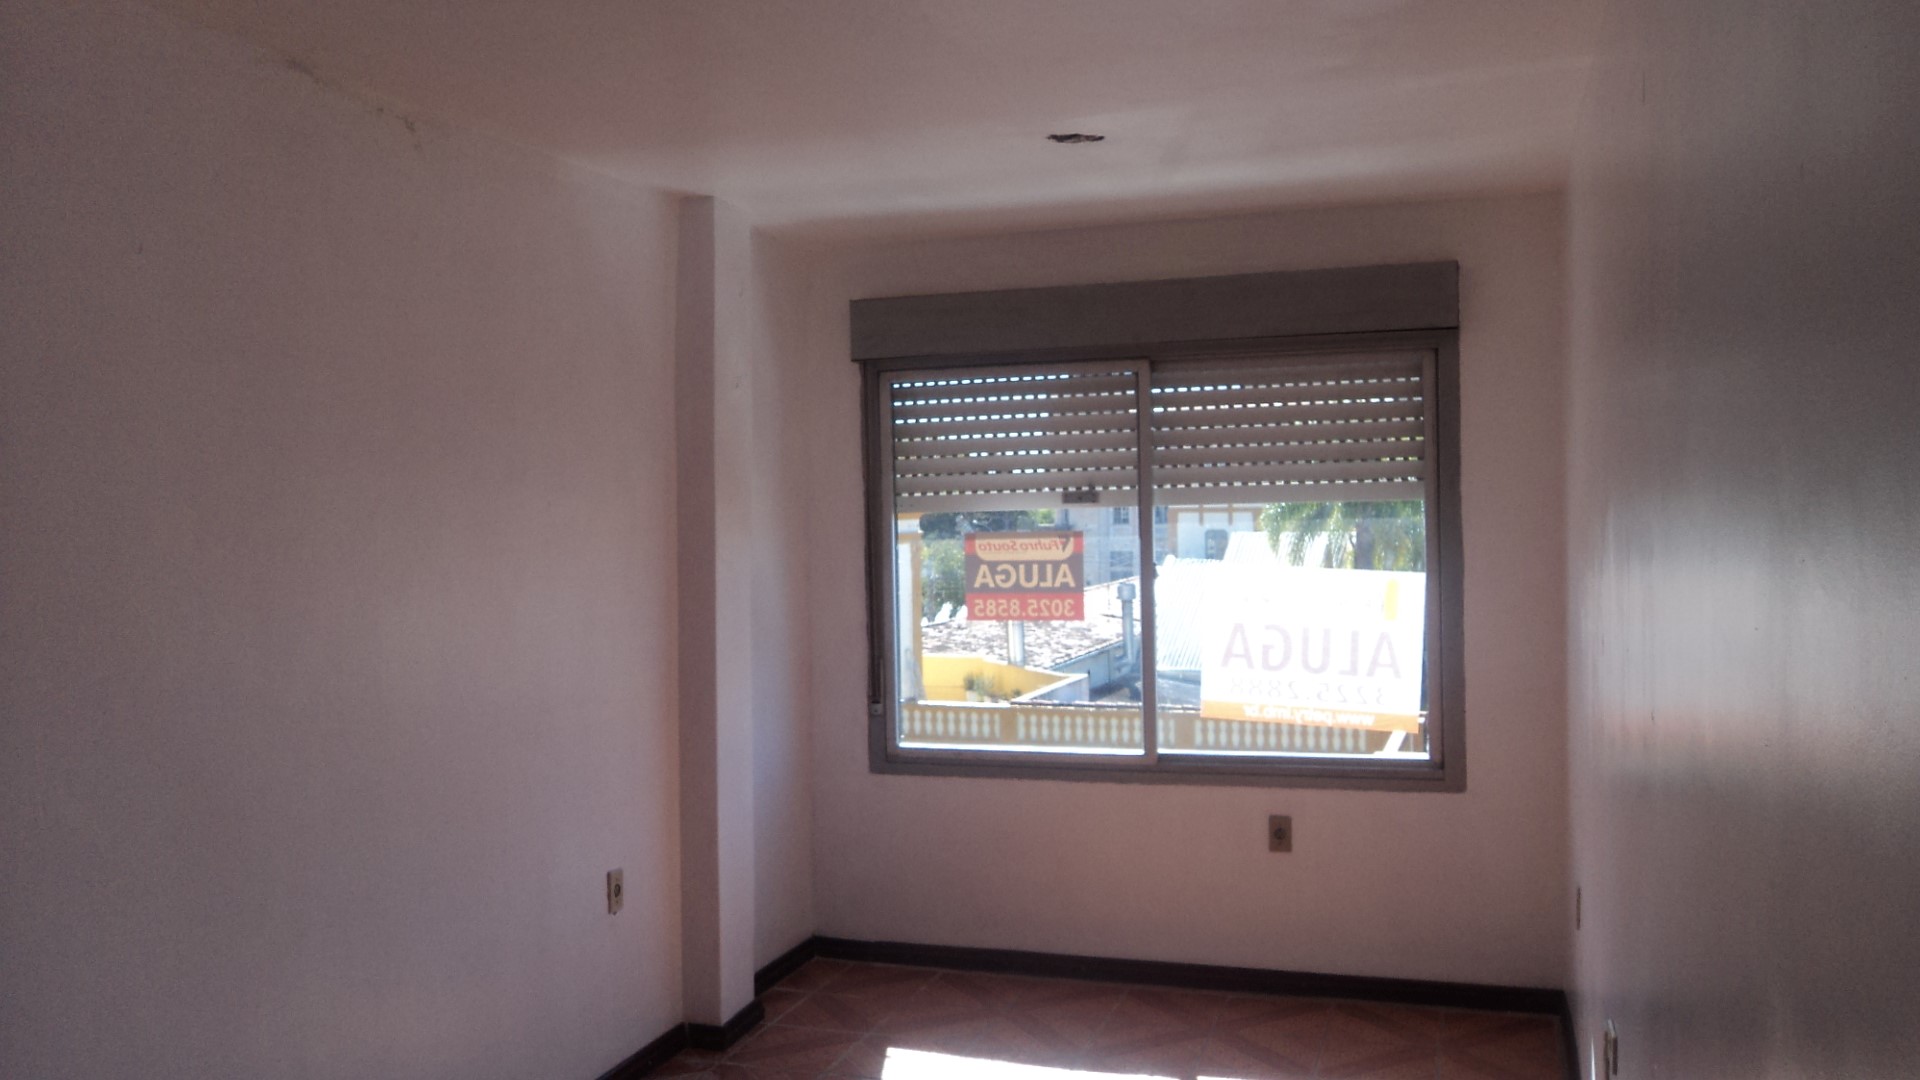 Sala para alugar  com  24 m²  no bairro CENTRO em PELOTAS/RS